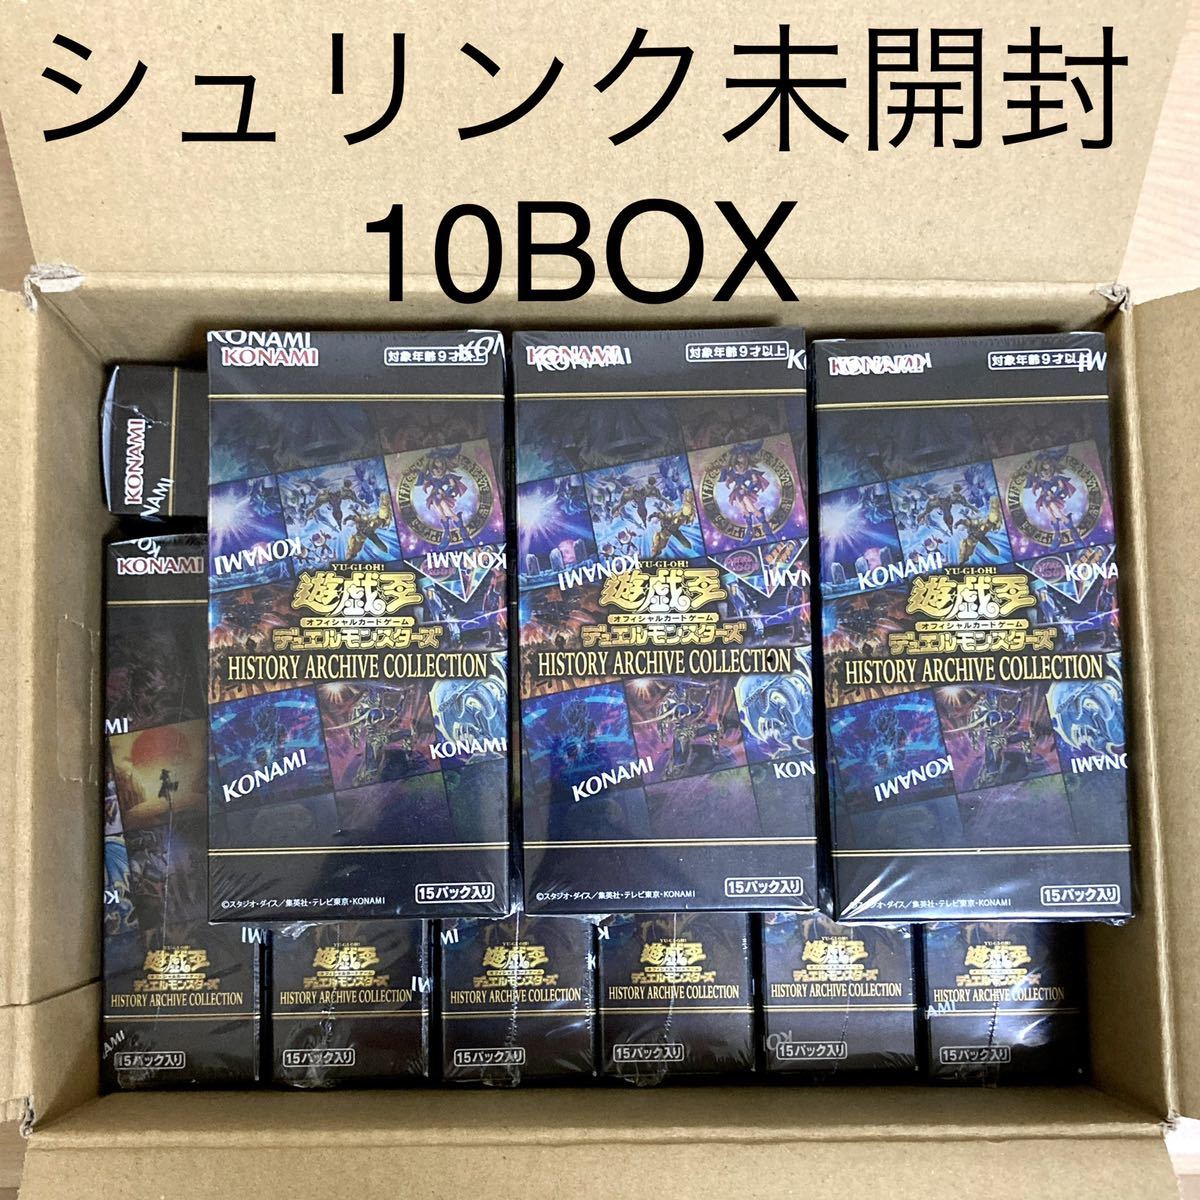 遊戯王 ヒストリーアーカイブコレクション 10box シュリンク付き 新品 